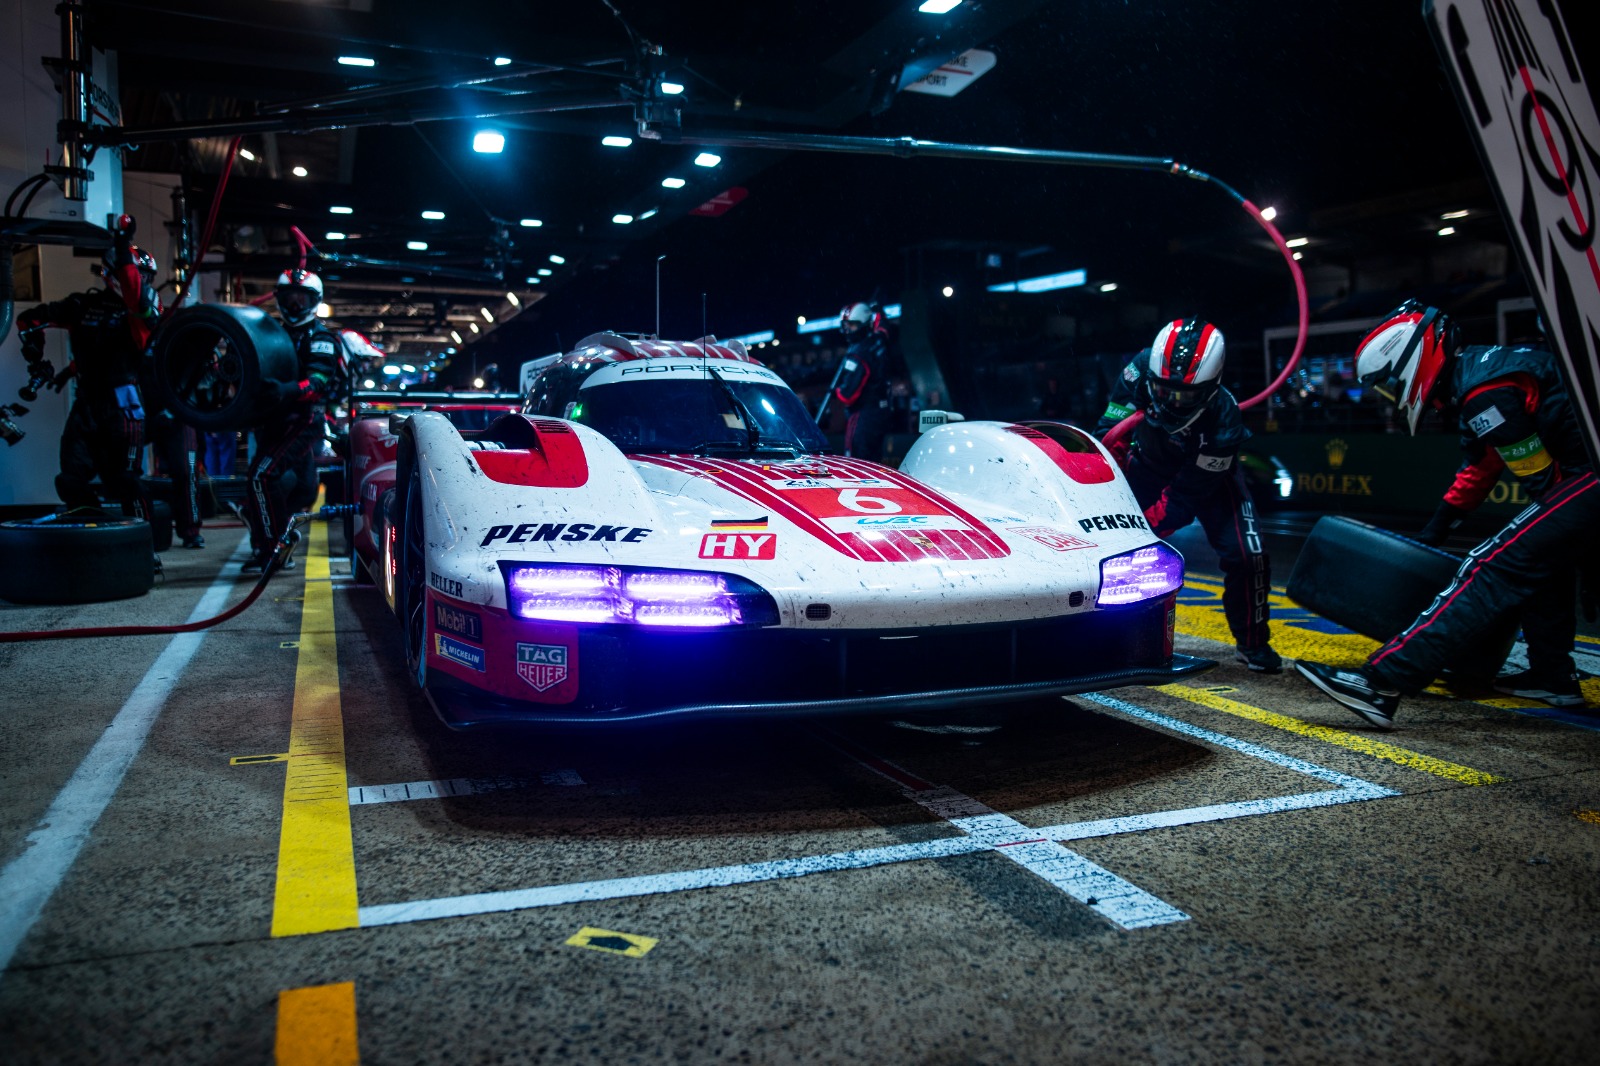 Desfilando bajo la lluvia, tres horas de Safety Car privan de la acción en Le Mans antes del amanecer